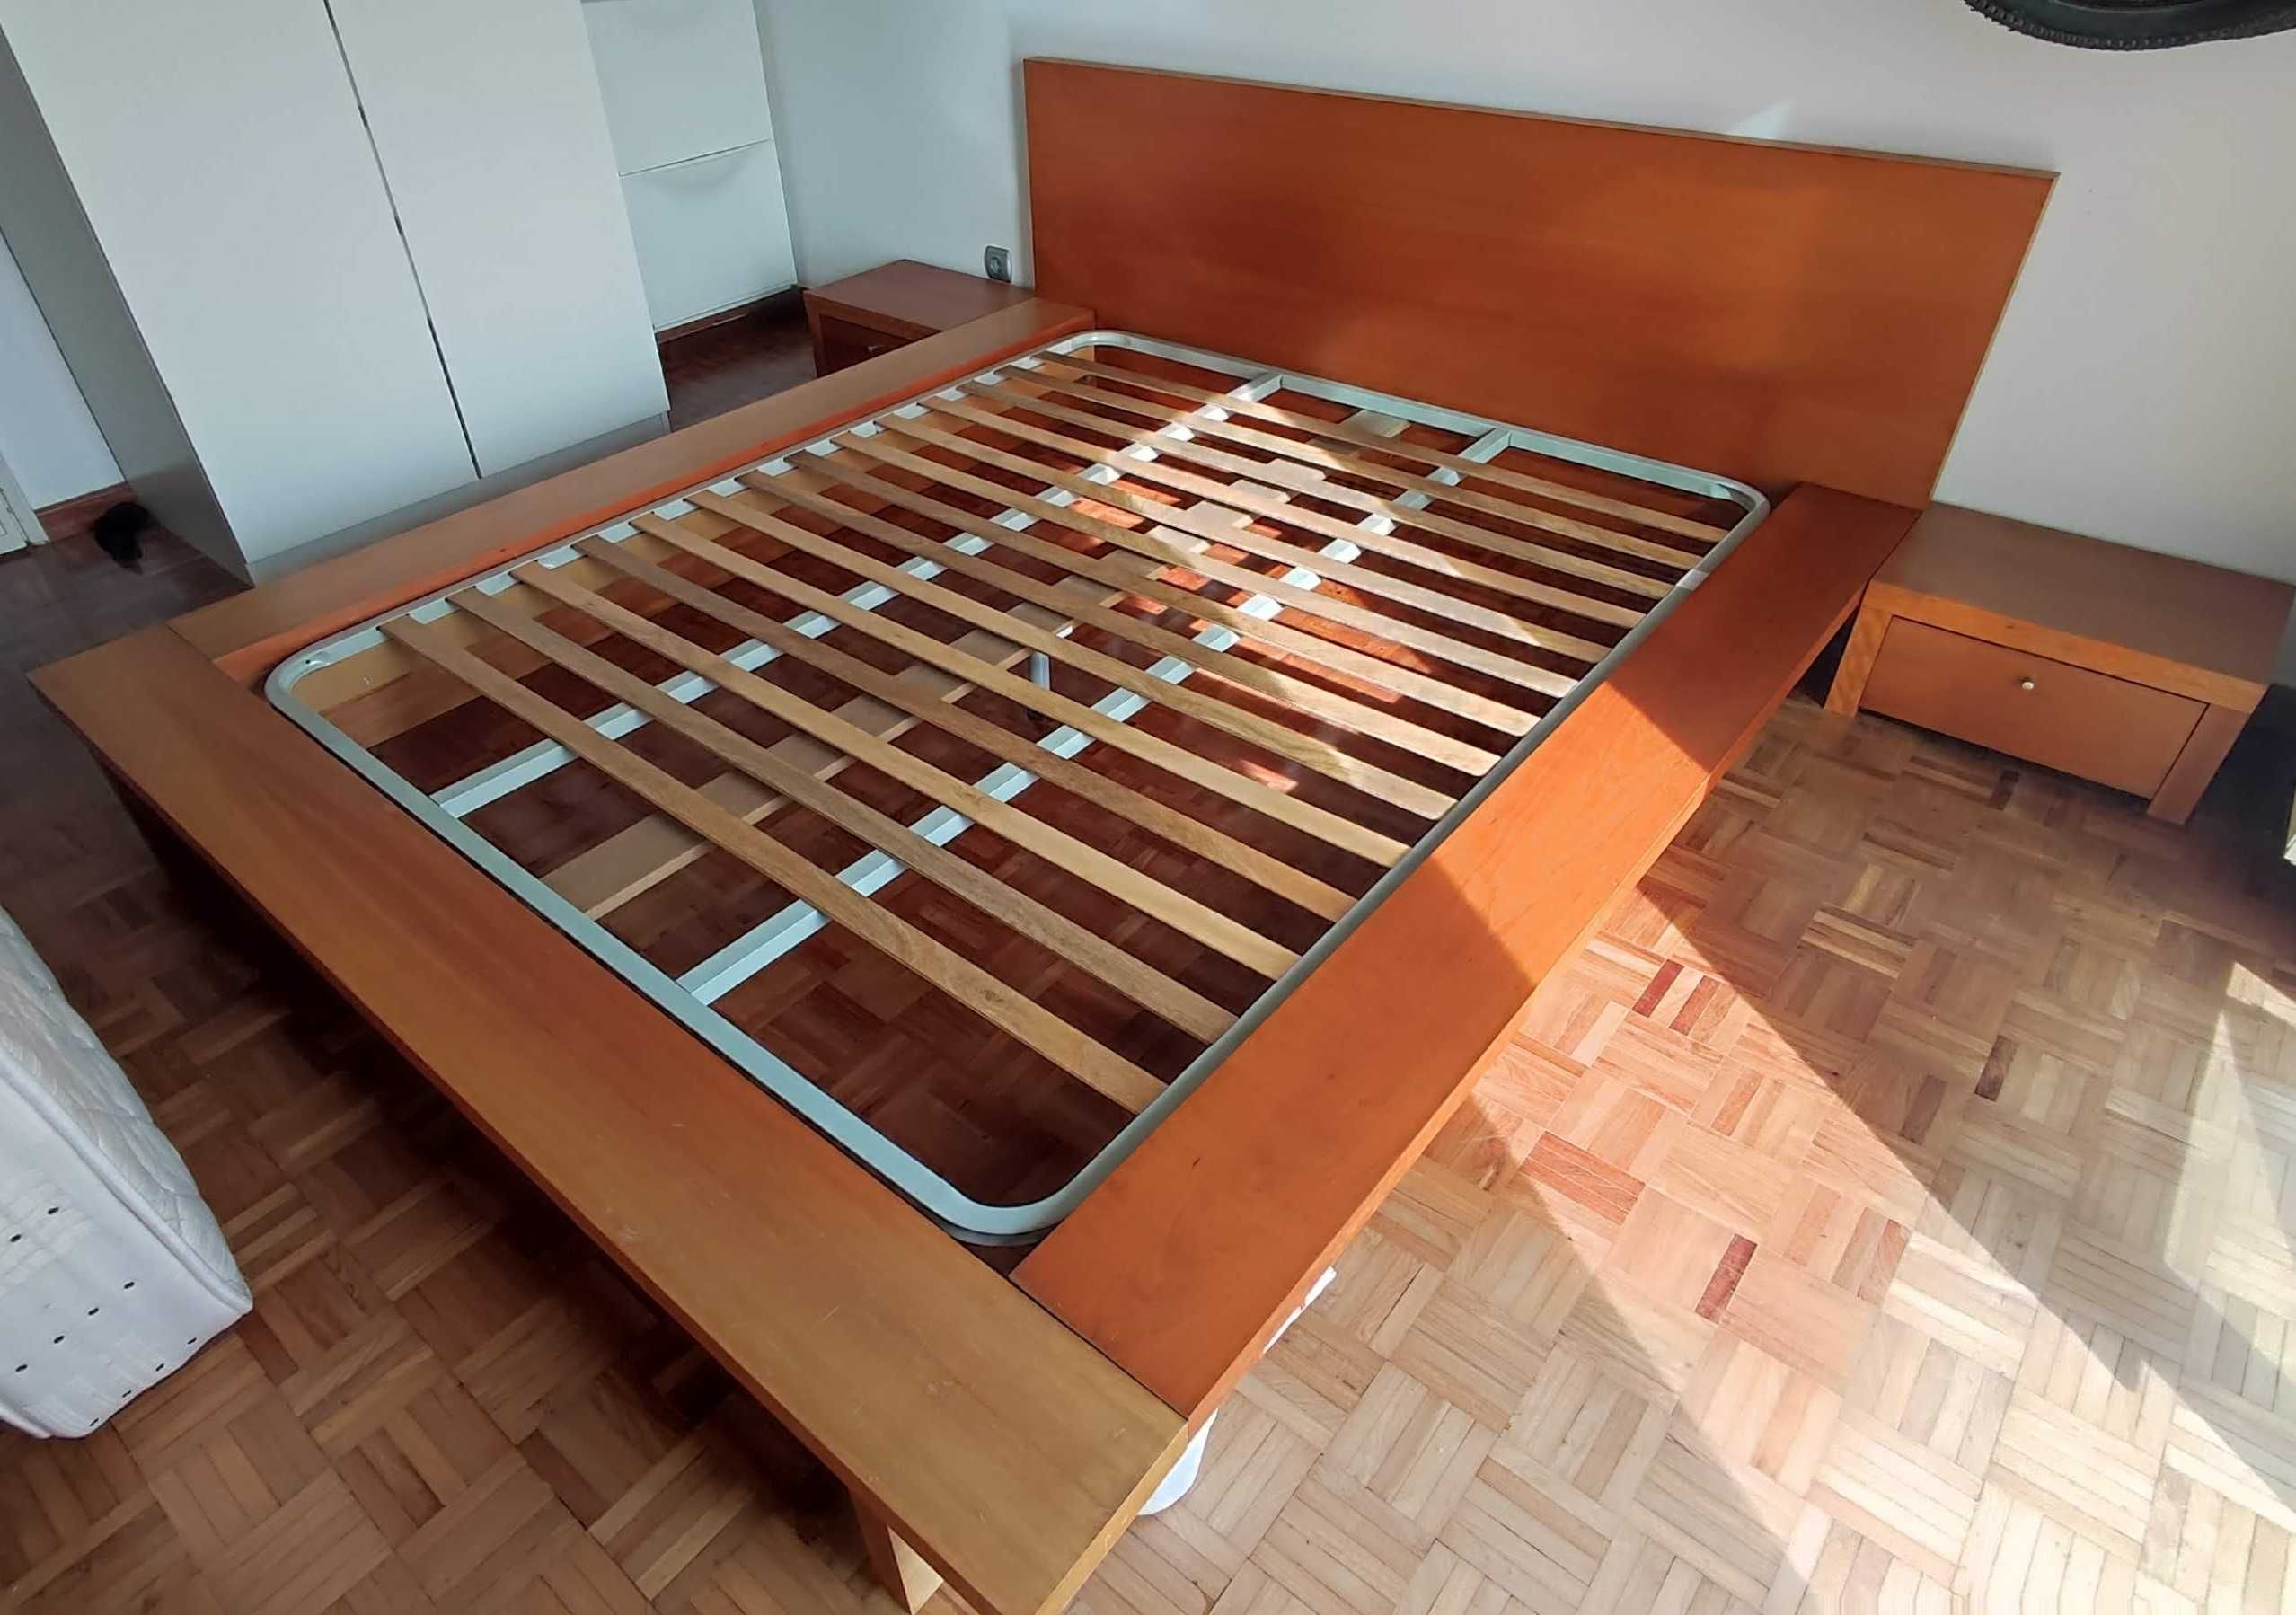 Cama de casal + 2 mesas de cabeceira + colchão (160x200) - Gato Preto